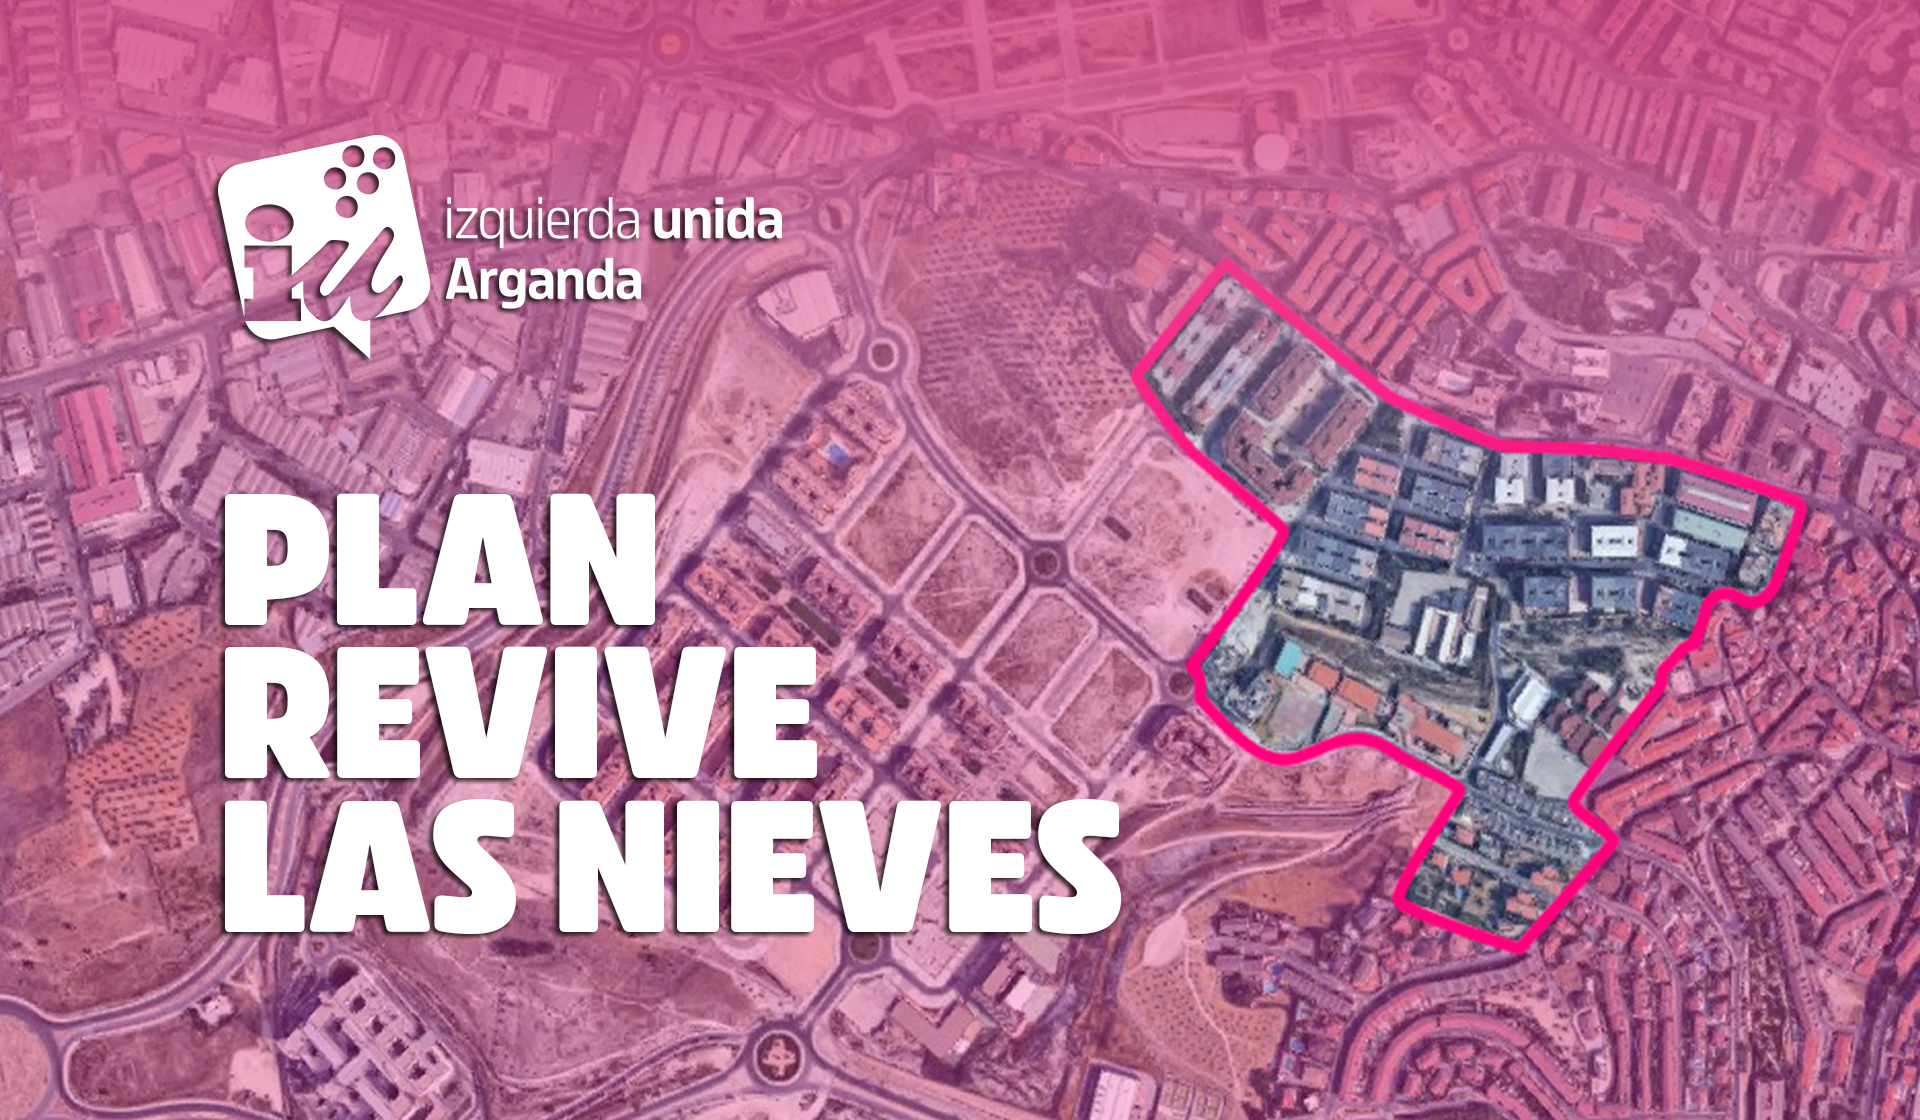 Plan Revive Las Nieves